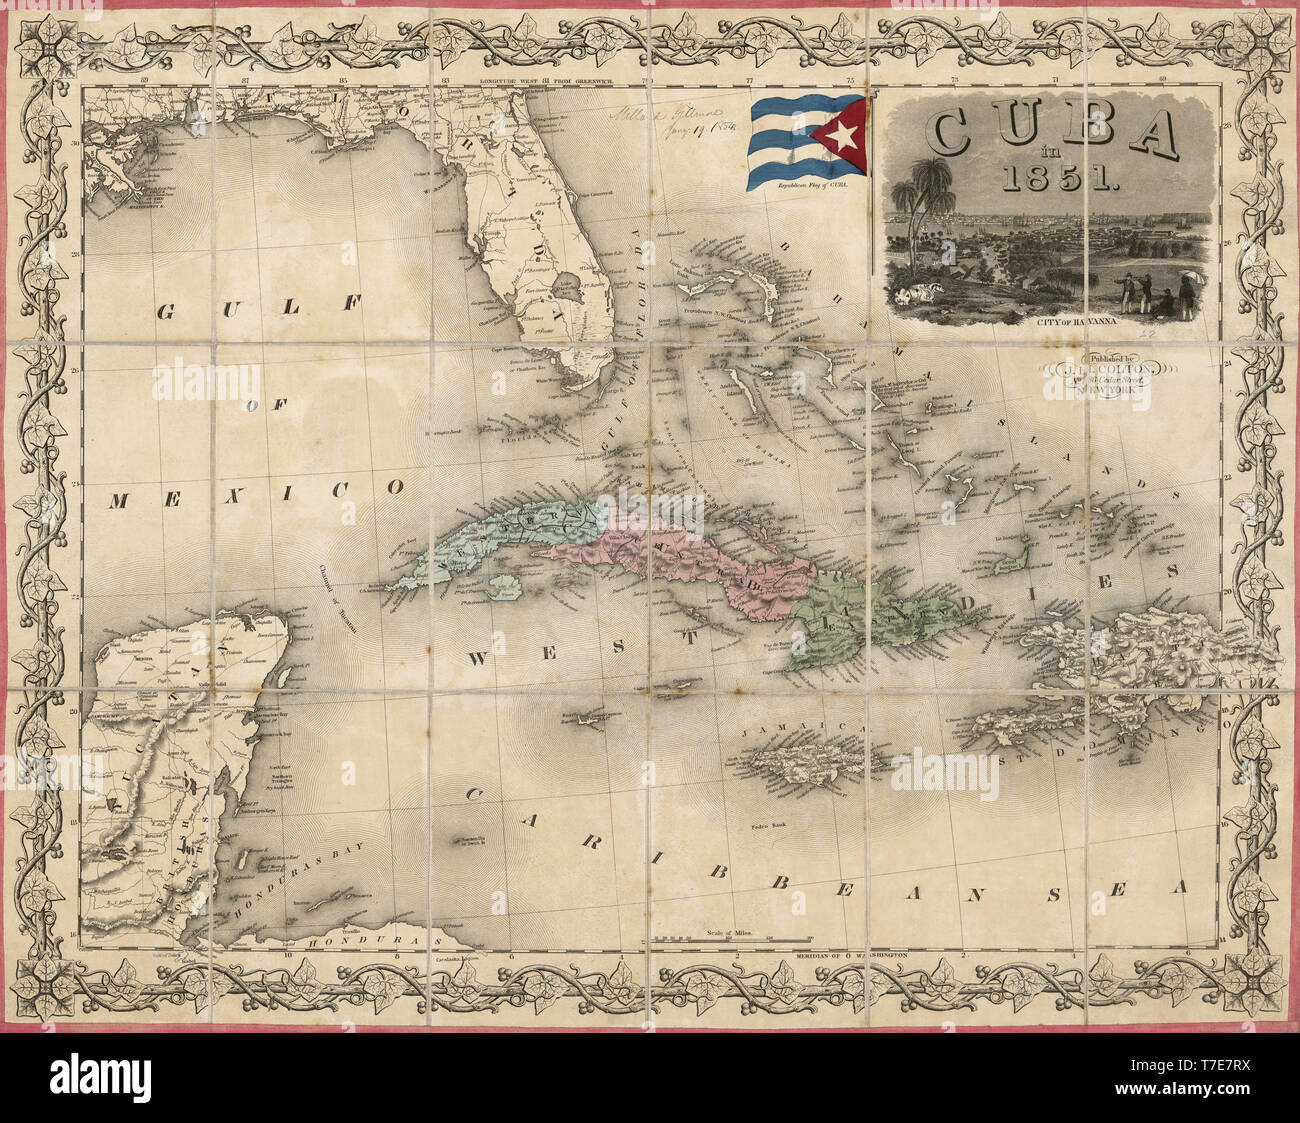 Karte von Kuba, Veröffentlicht von J.H. Colton & Co., New York, 1851 Stockfoto